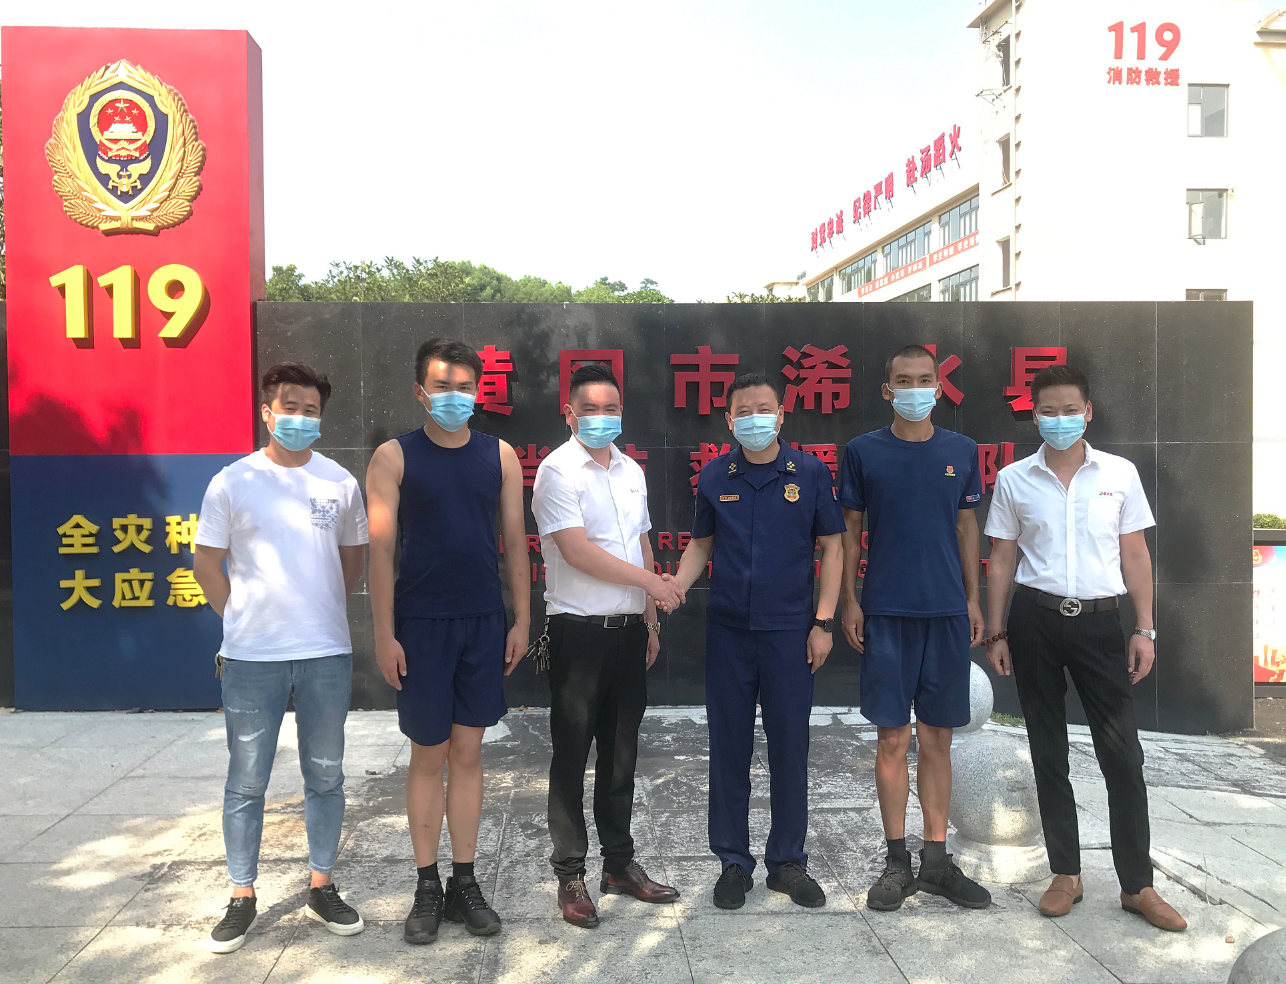 2021-07-31 总经理慰问浠水县消防救援大队全体官兵